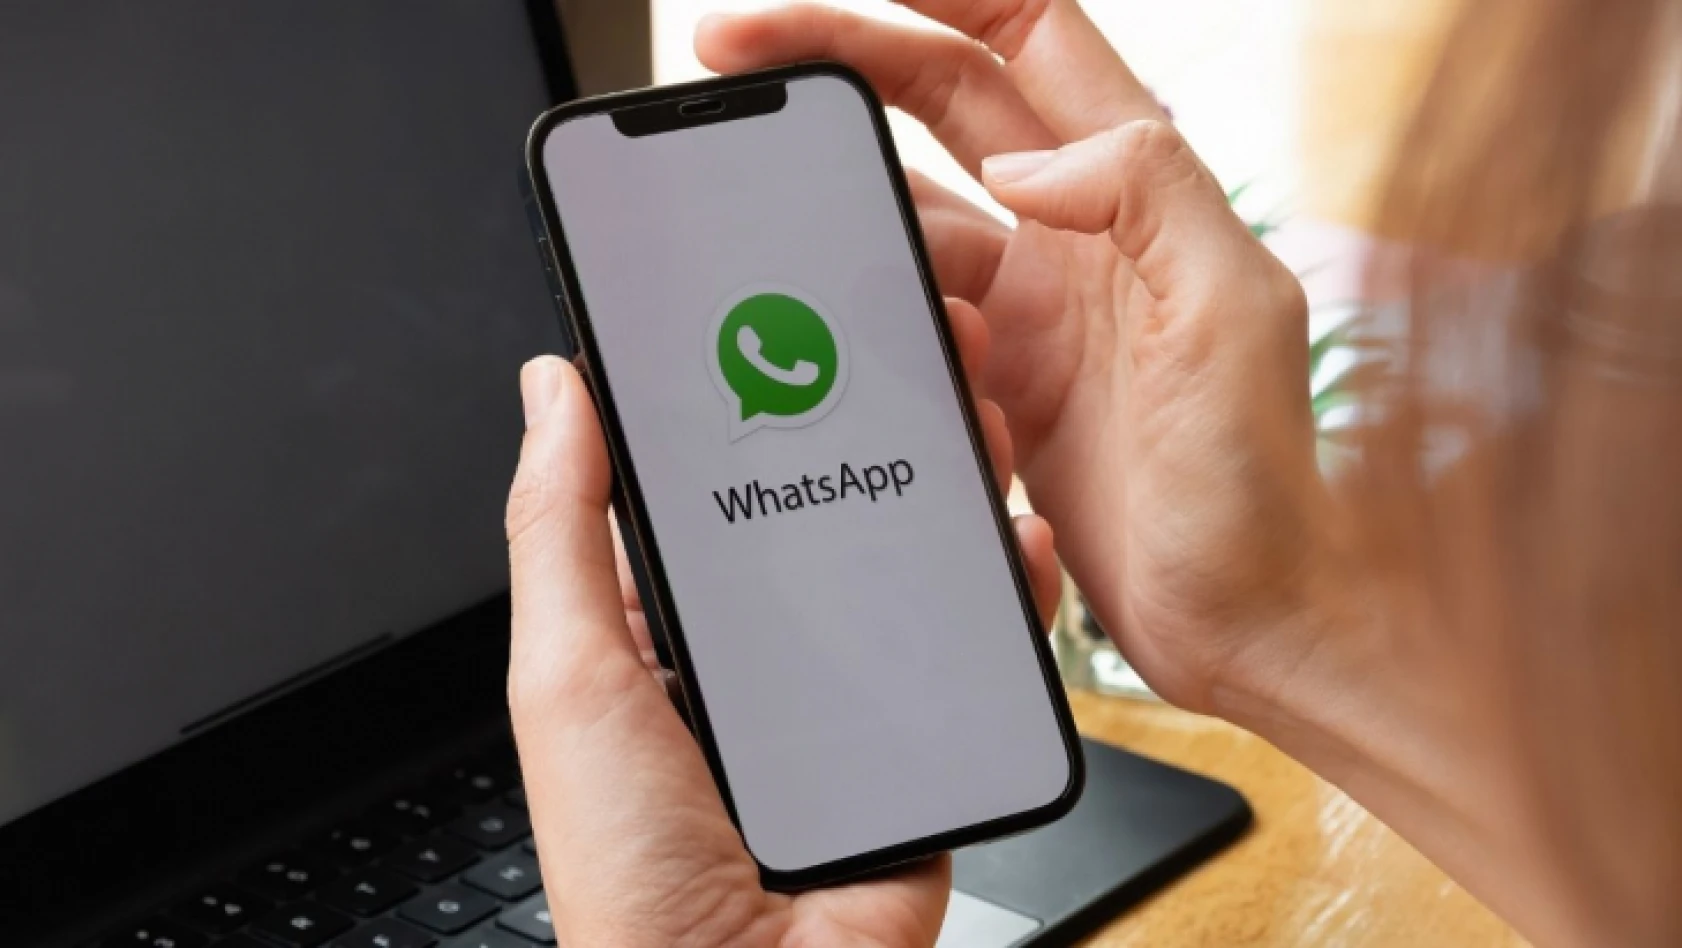 WhatsApp gizliliğe son veriyor! Artık her şeyi kullanıcılar görebilecek!